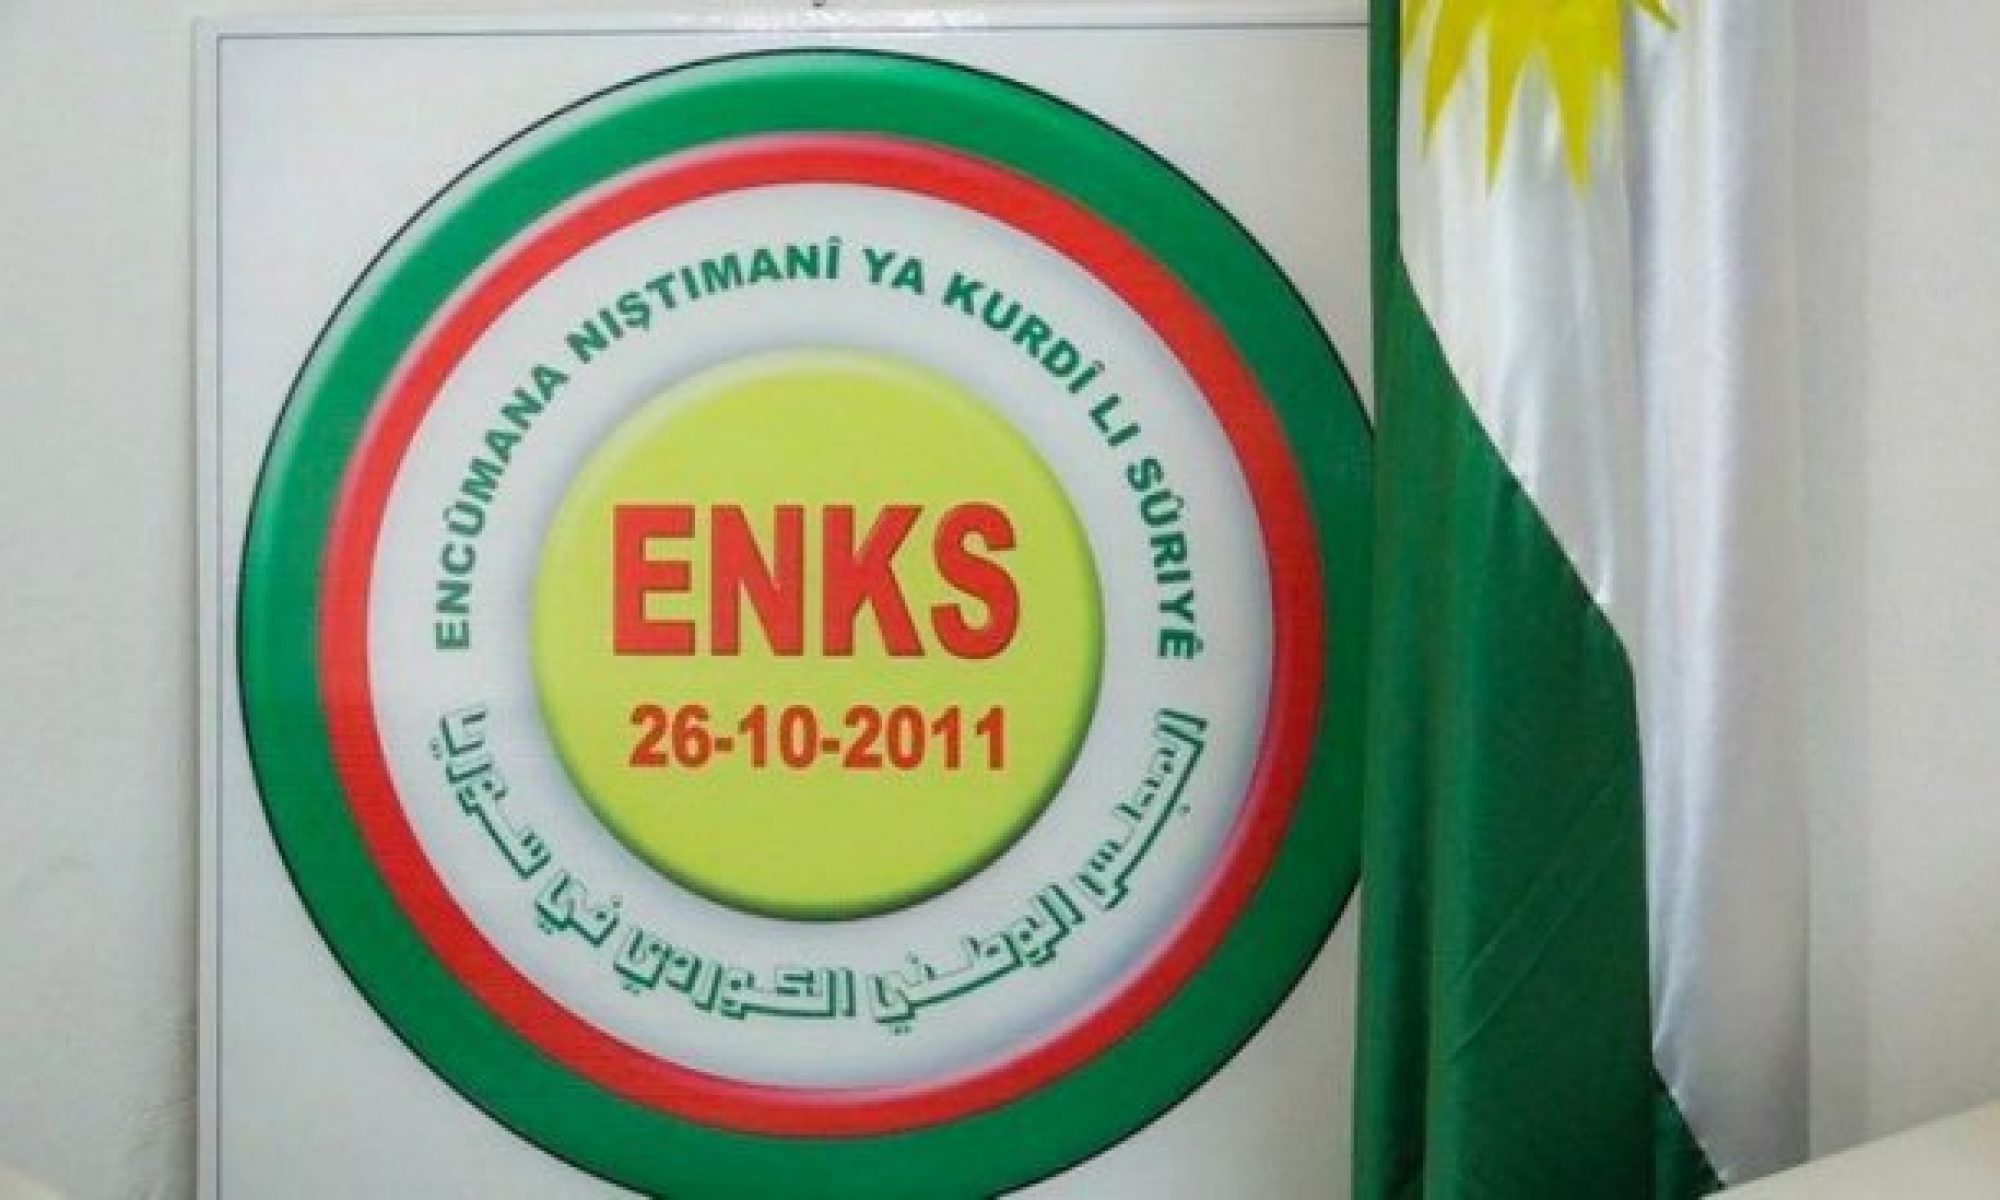 ENKS Aldar Xalil'in açıklamasını "Kürt birliğini baltalamaya dönük bir girişim" olarak değerlendirdi